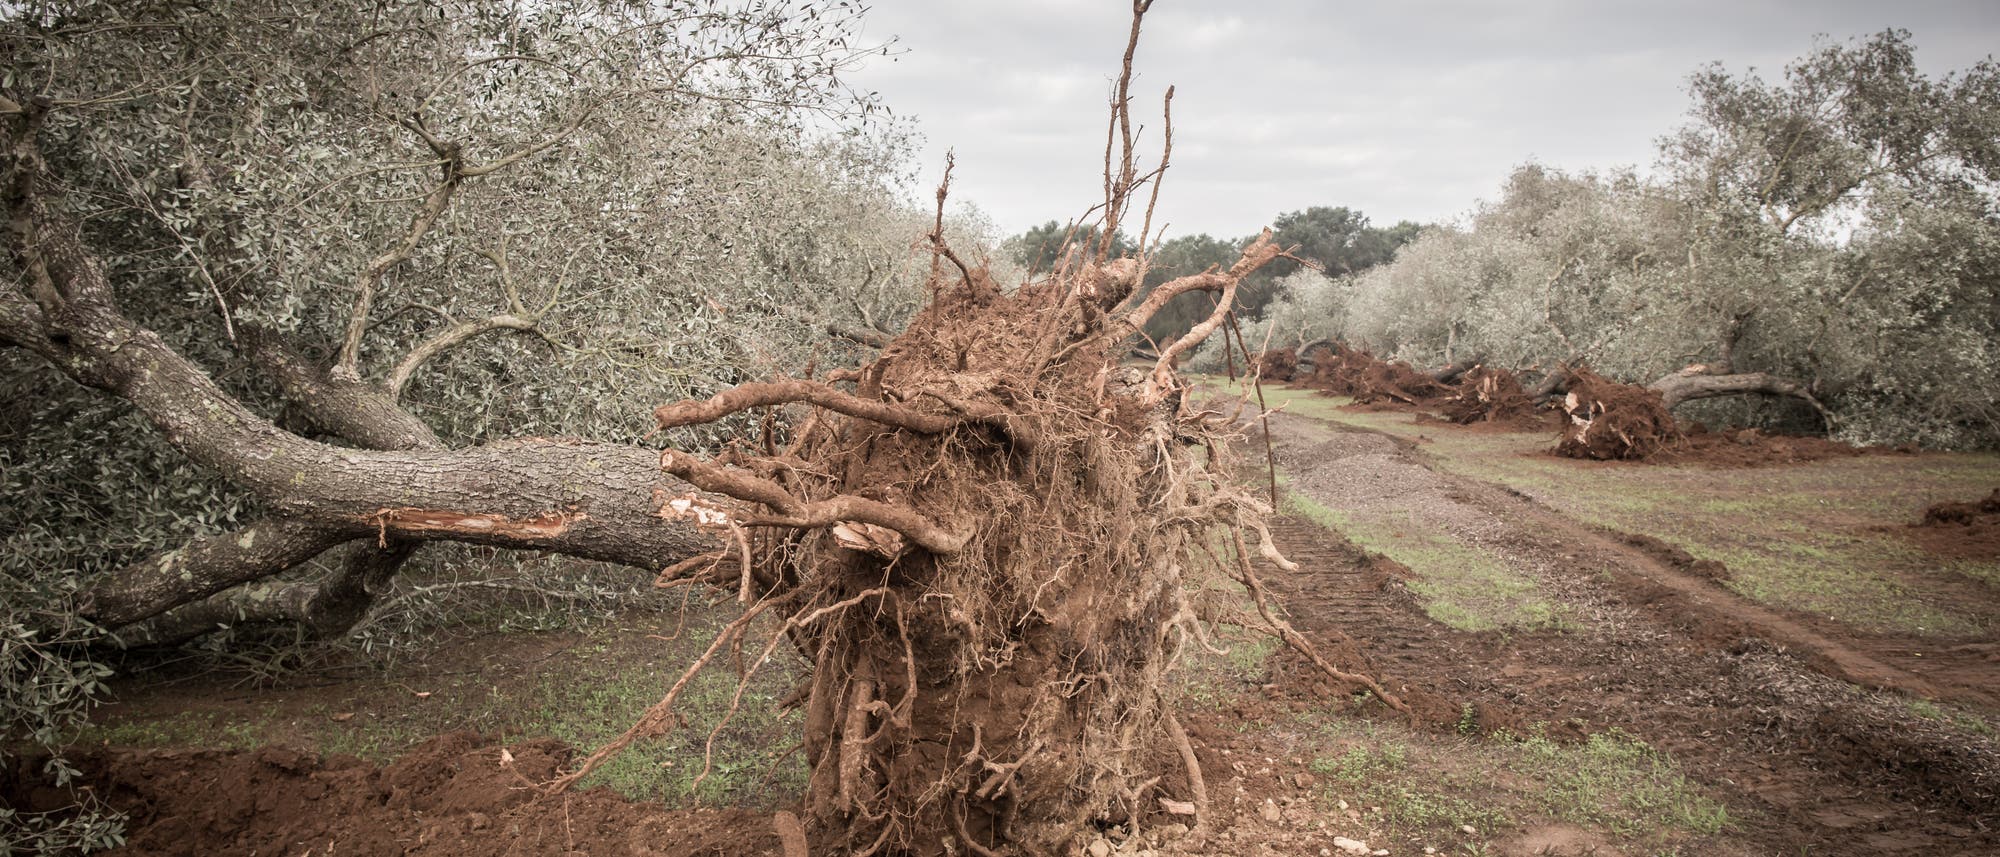 Sterbender Ölbaum wurde mit Stumpf und Stiel gerodet, um Ausbreitung einer Krankheit zu stoppen.